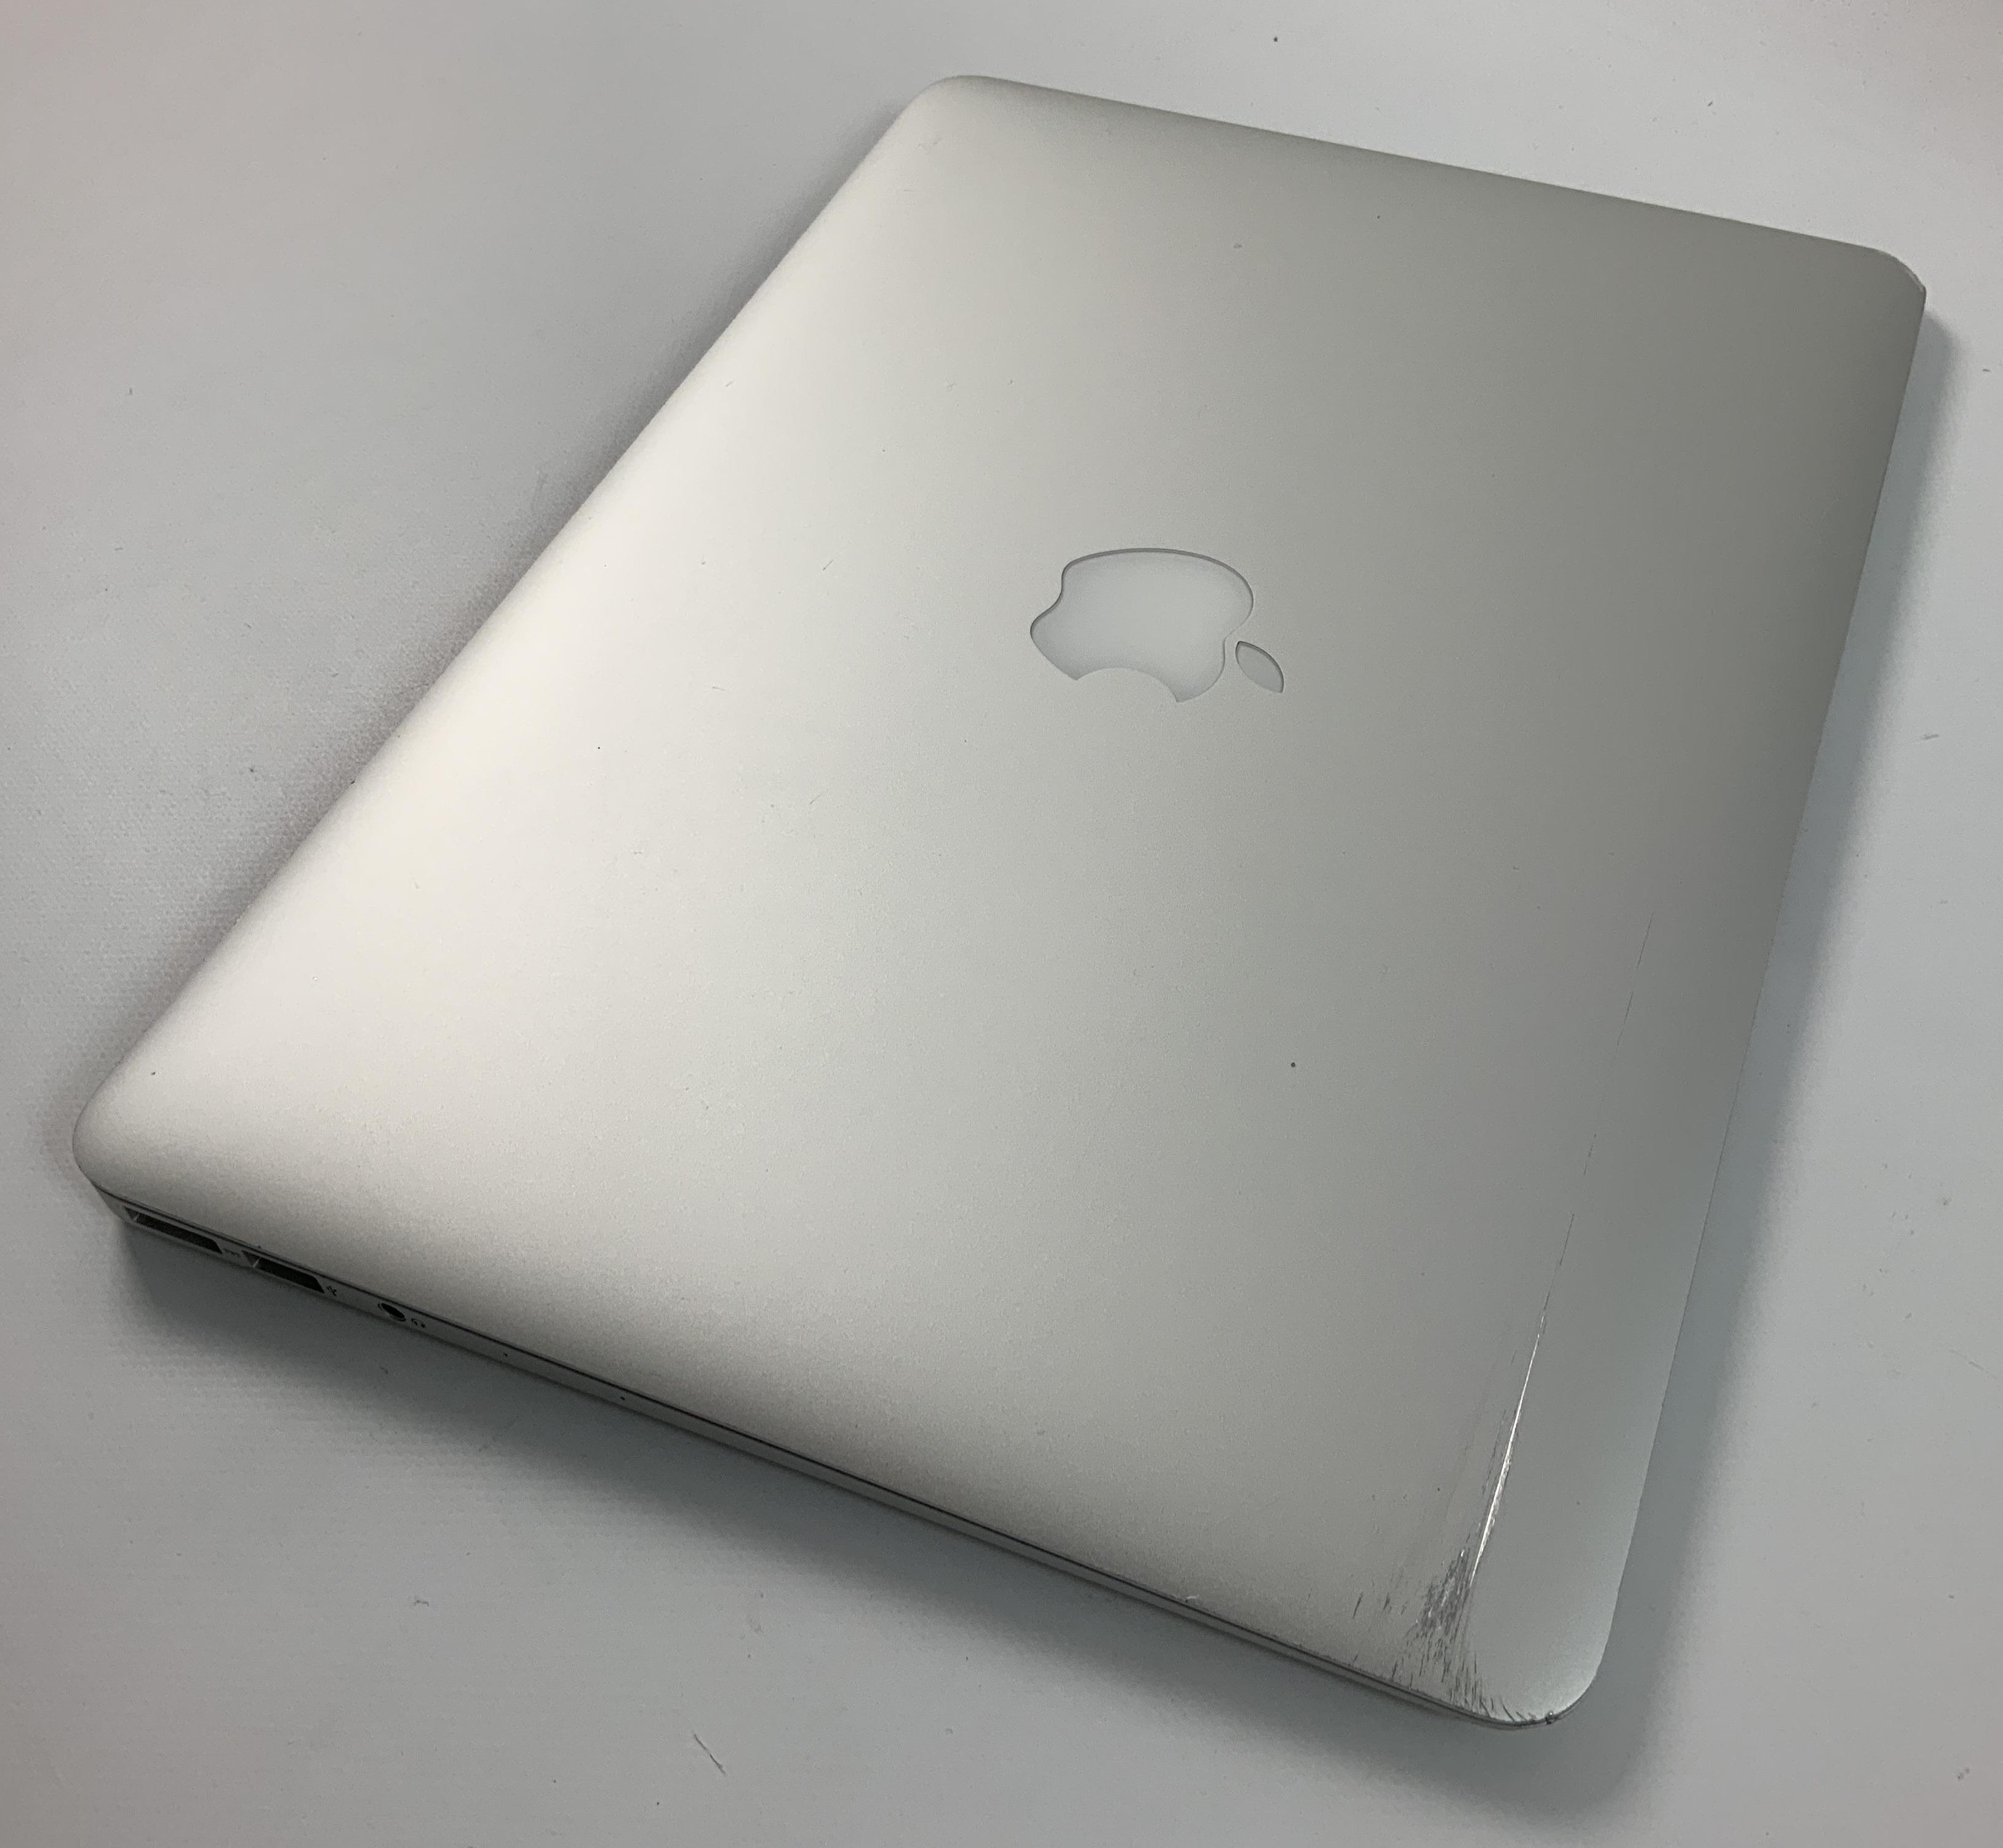 MacBook Air 13" Mid 2017 (Intel Core i5 1.8 GHz 8 GB RAM 256 GB SSD), Intel Core i5 1.8 GHz, 8 GB RAM, 256 GB SSD, Bild 3